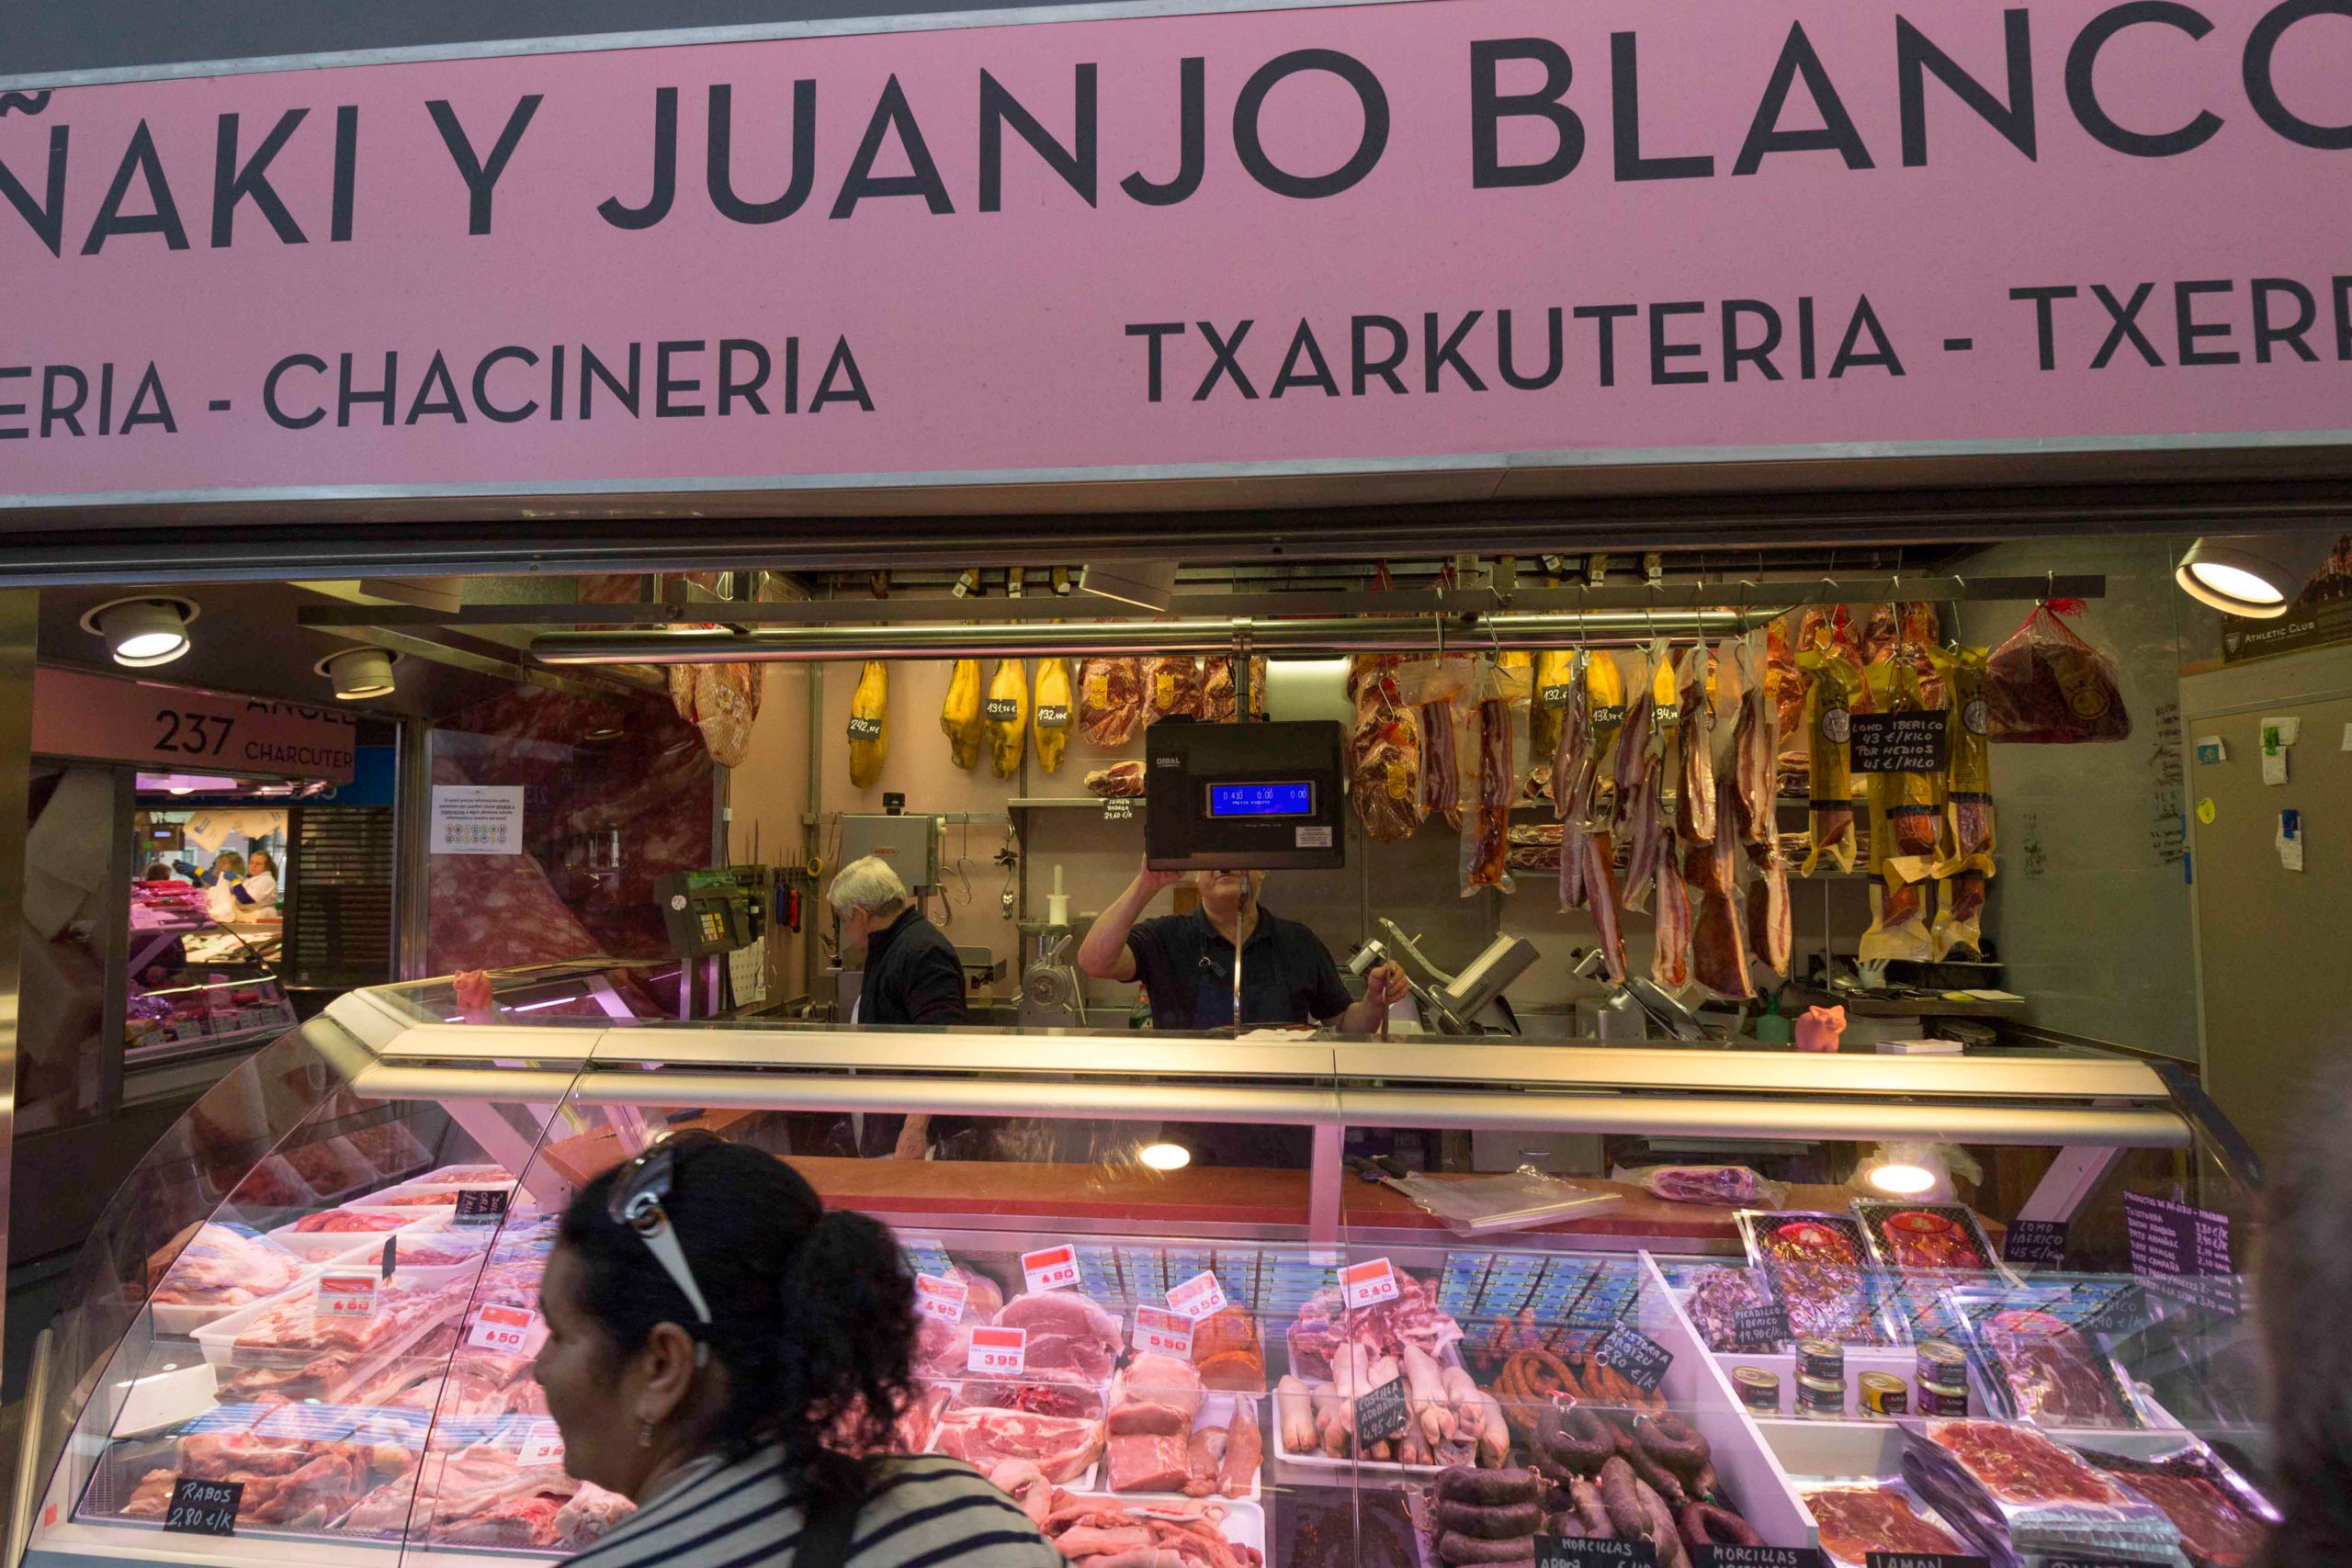 Carnicería y chacinería Iñaki y Juanjo Blanco